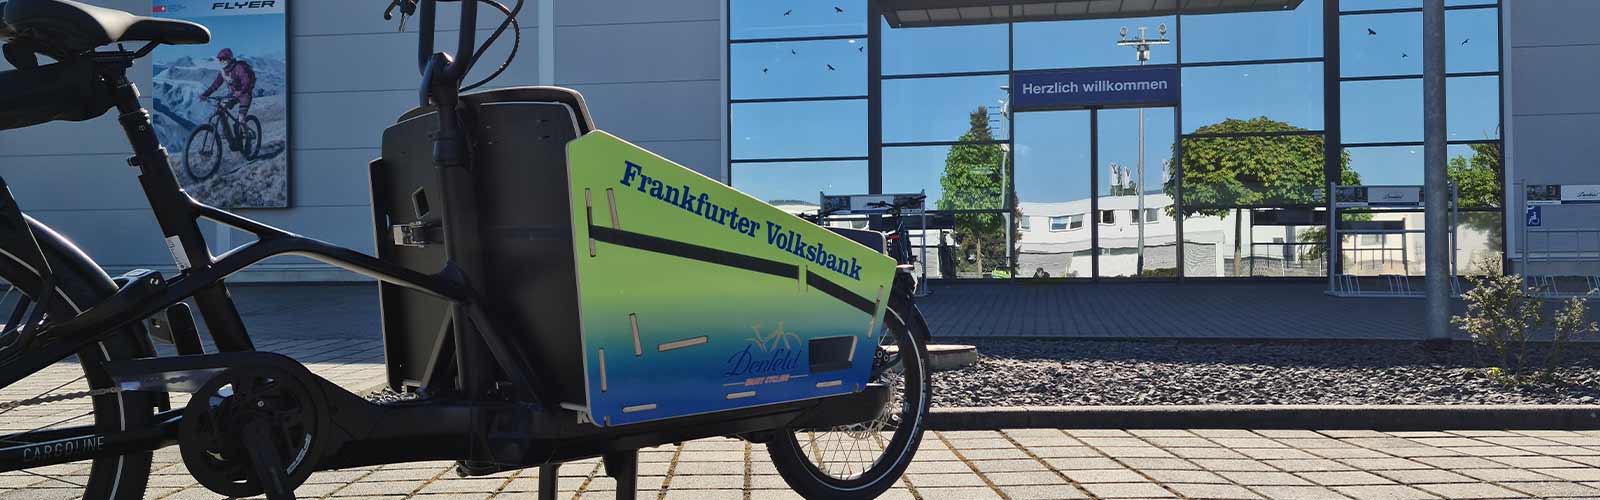 So könnte auch Ihr hausinternes Firmenrad aussehen: Cargobike Flotte Frankfurter Volksband.